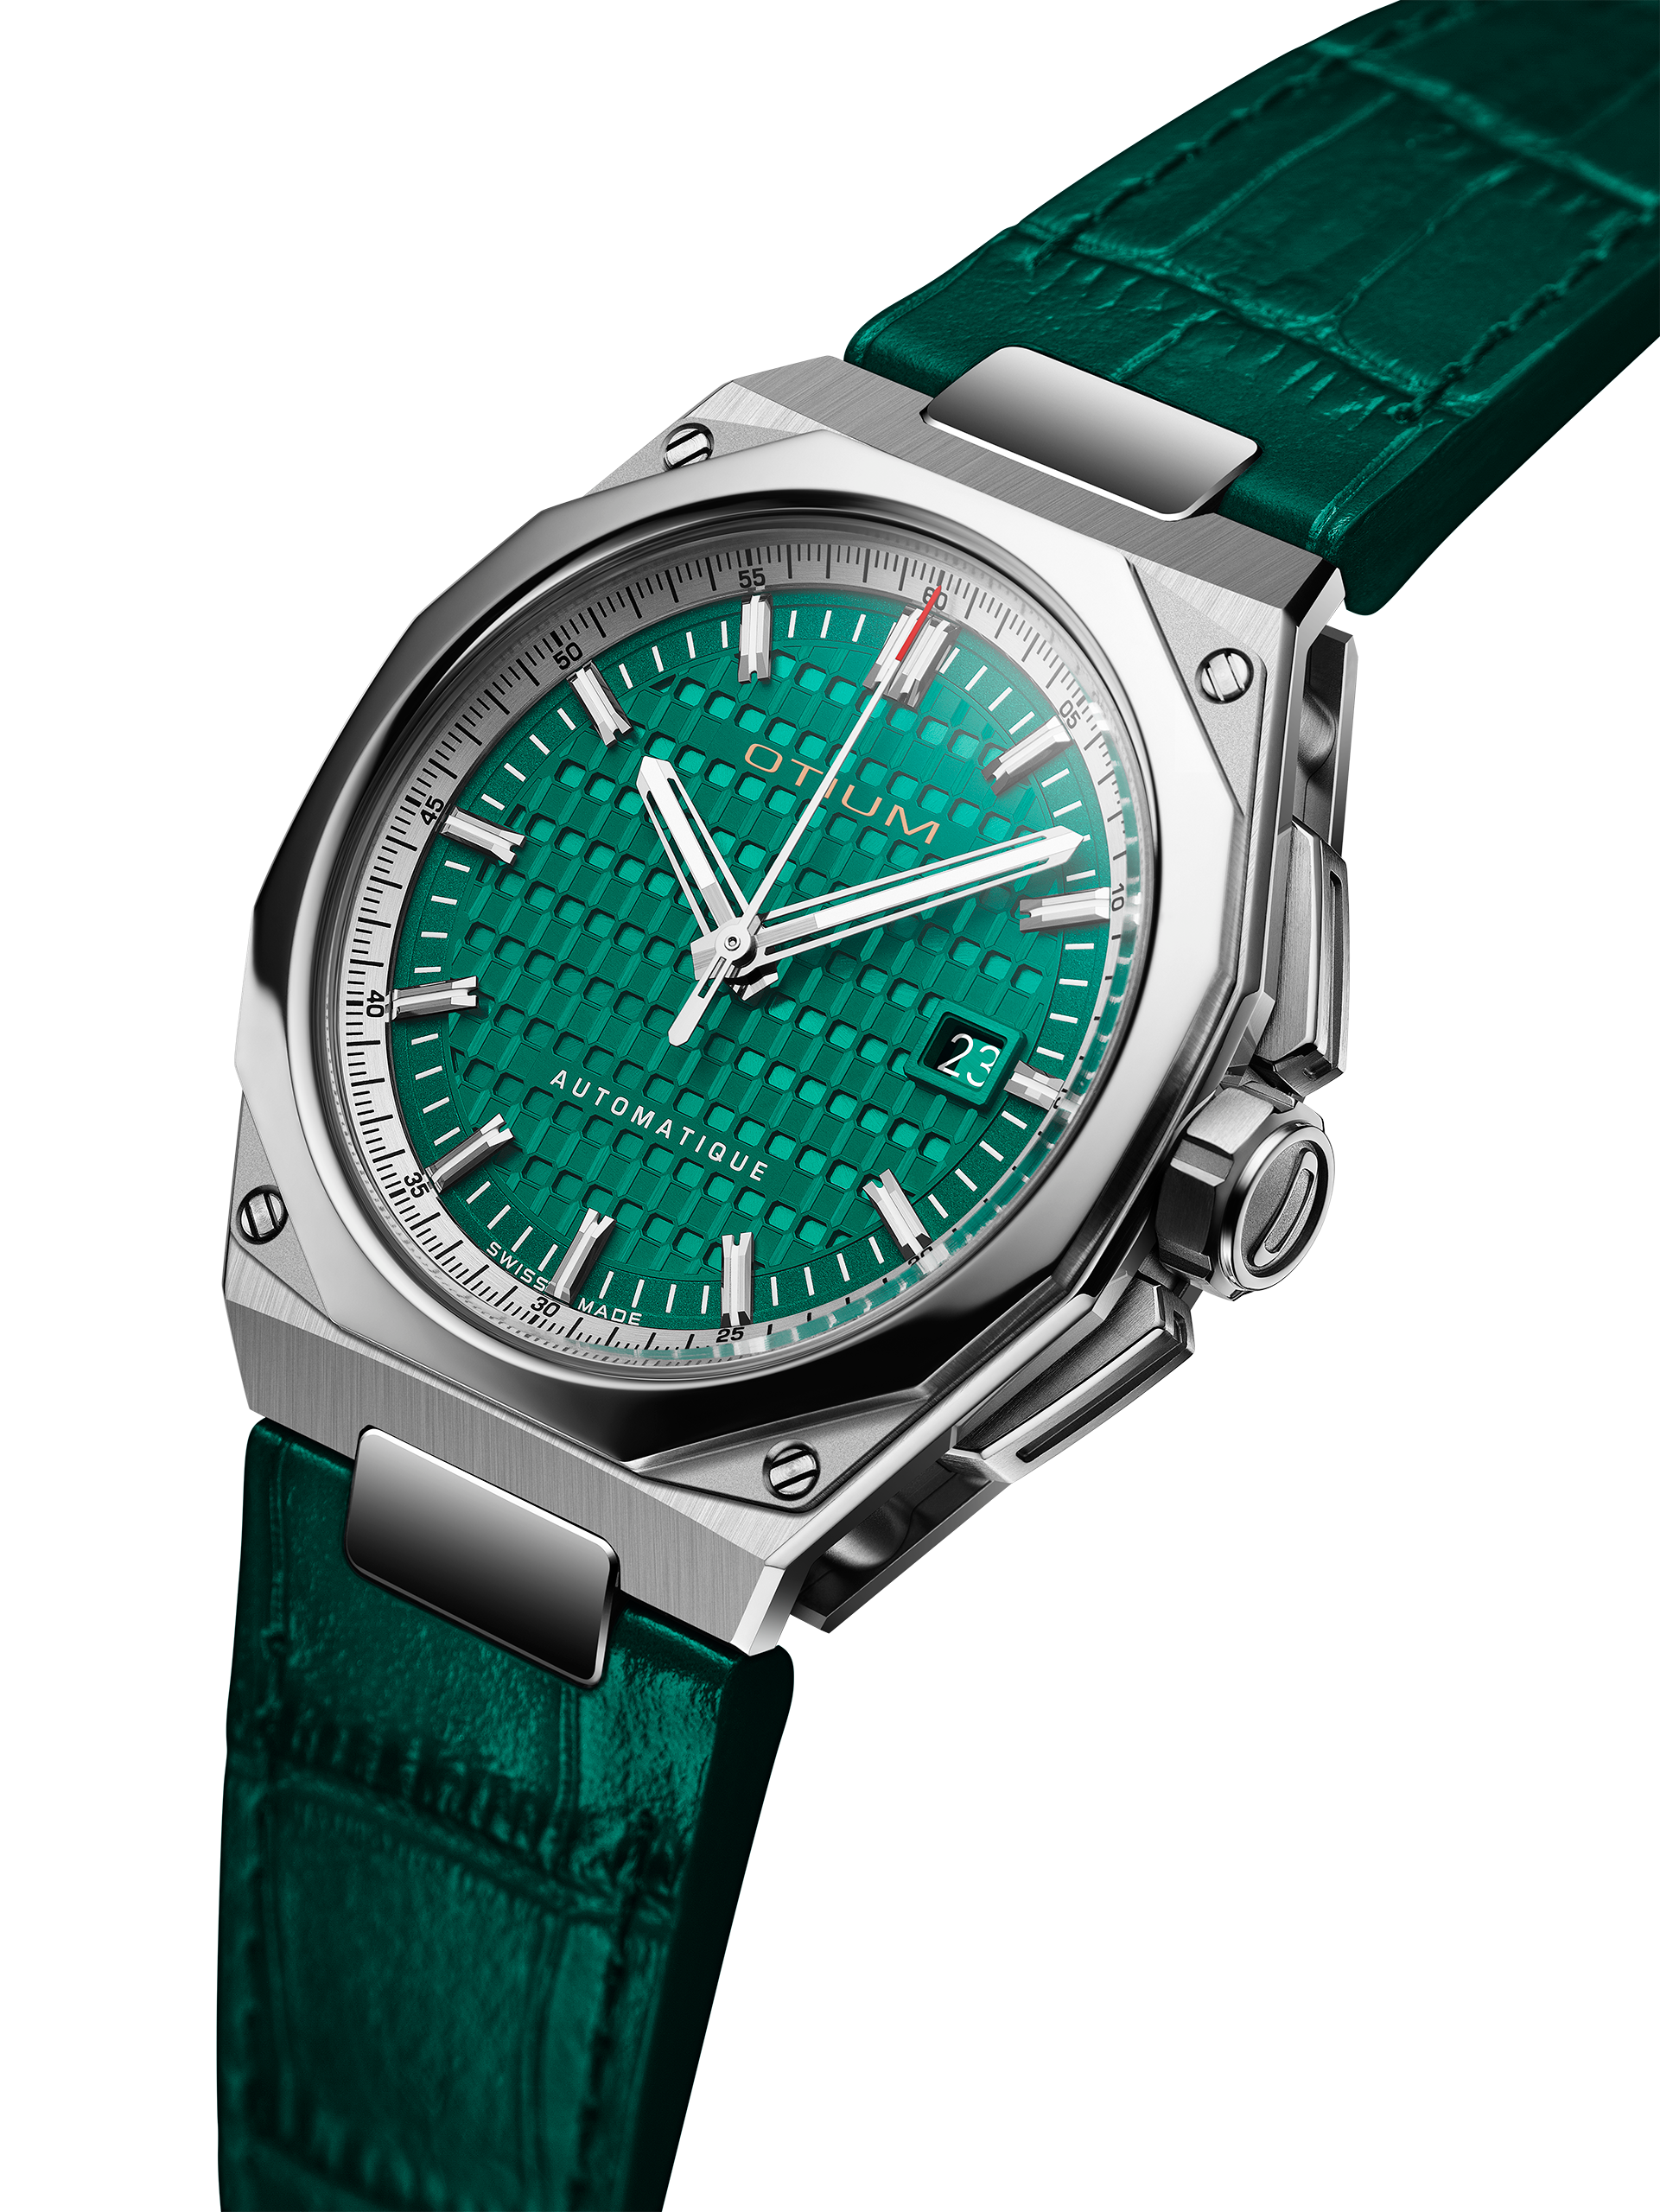 Repose Titanium - Emerald Green